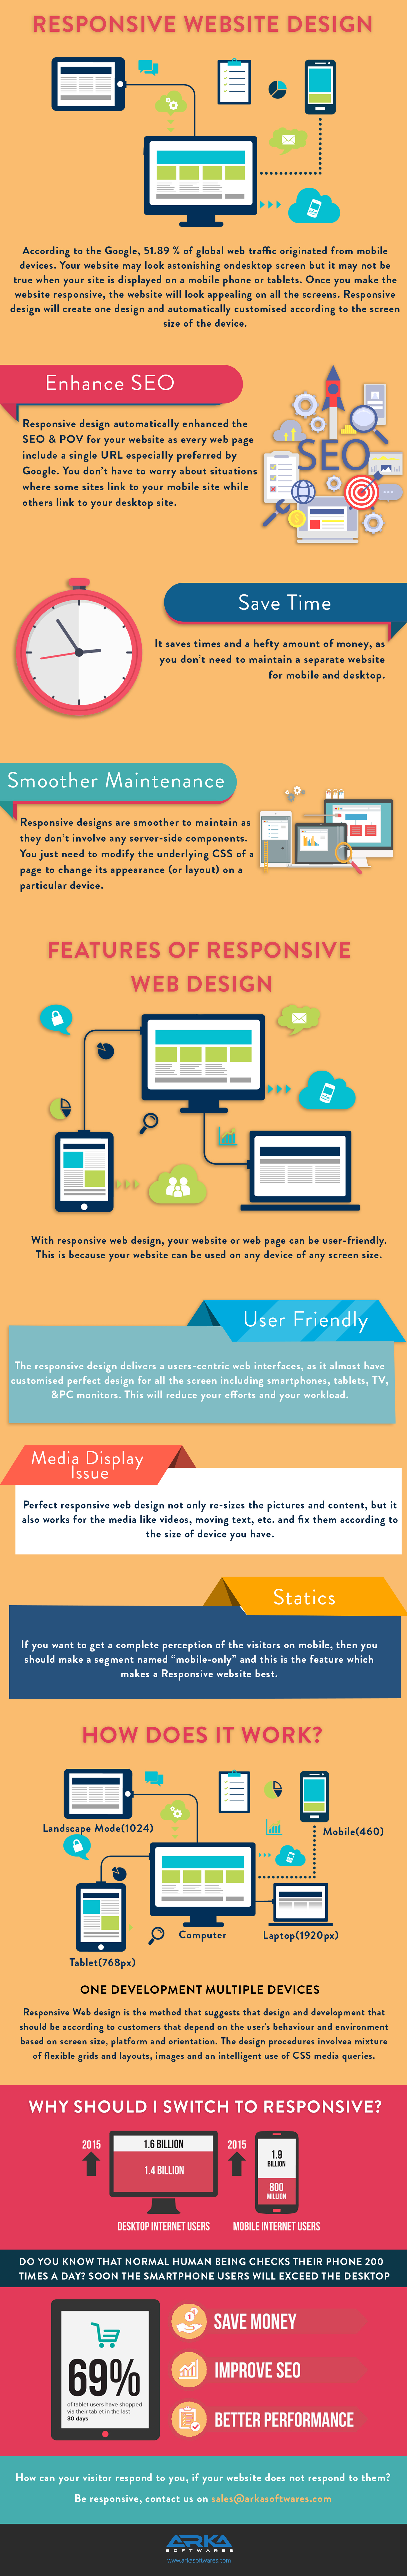 Responsive-Website-Design-Infographic